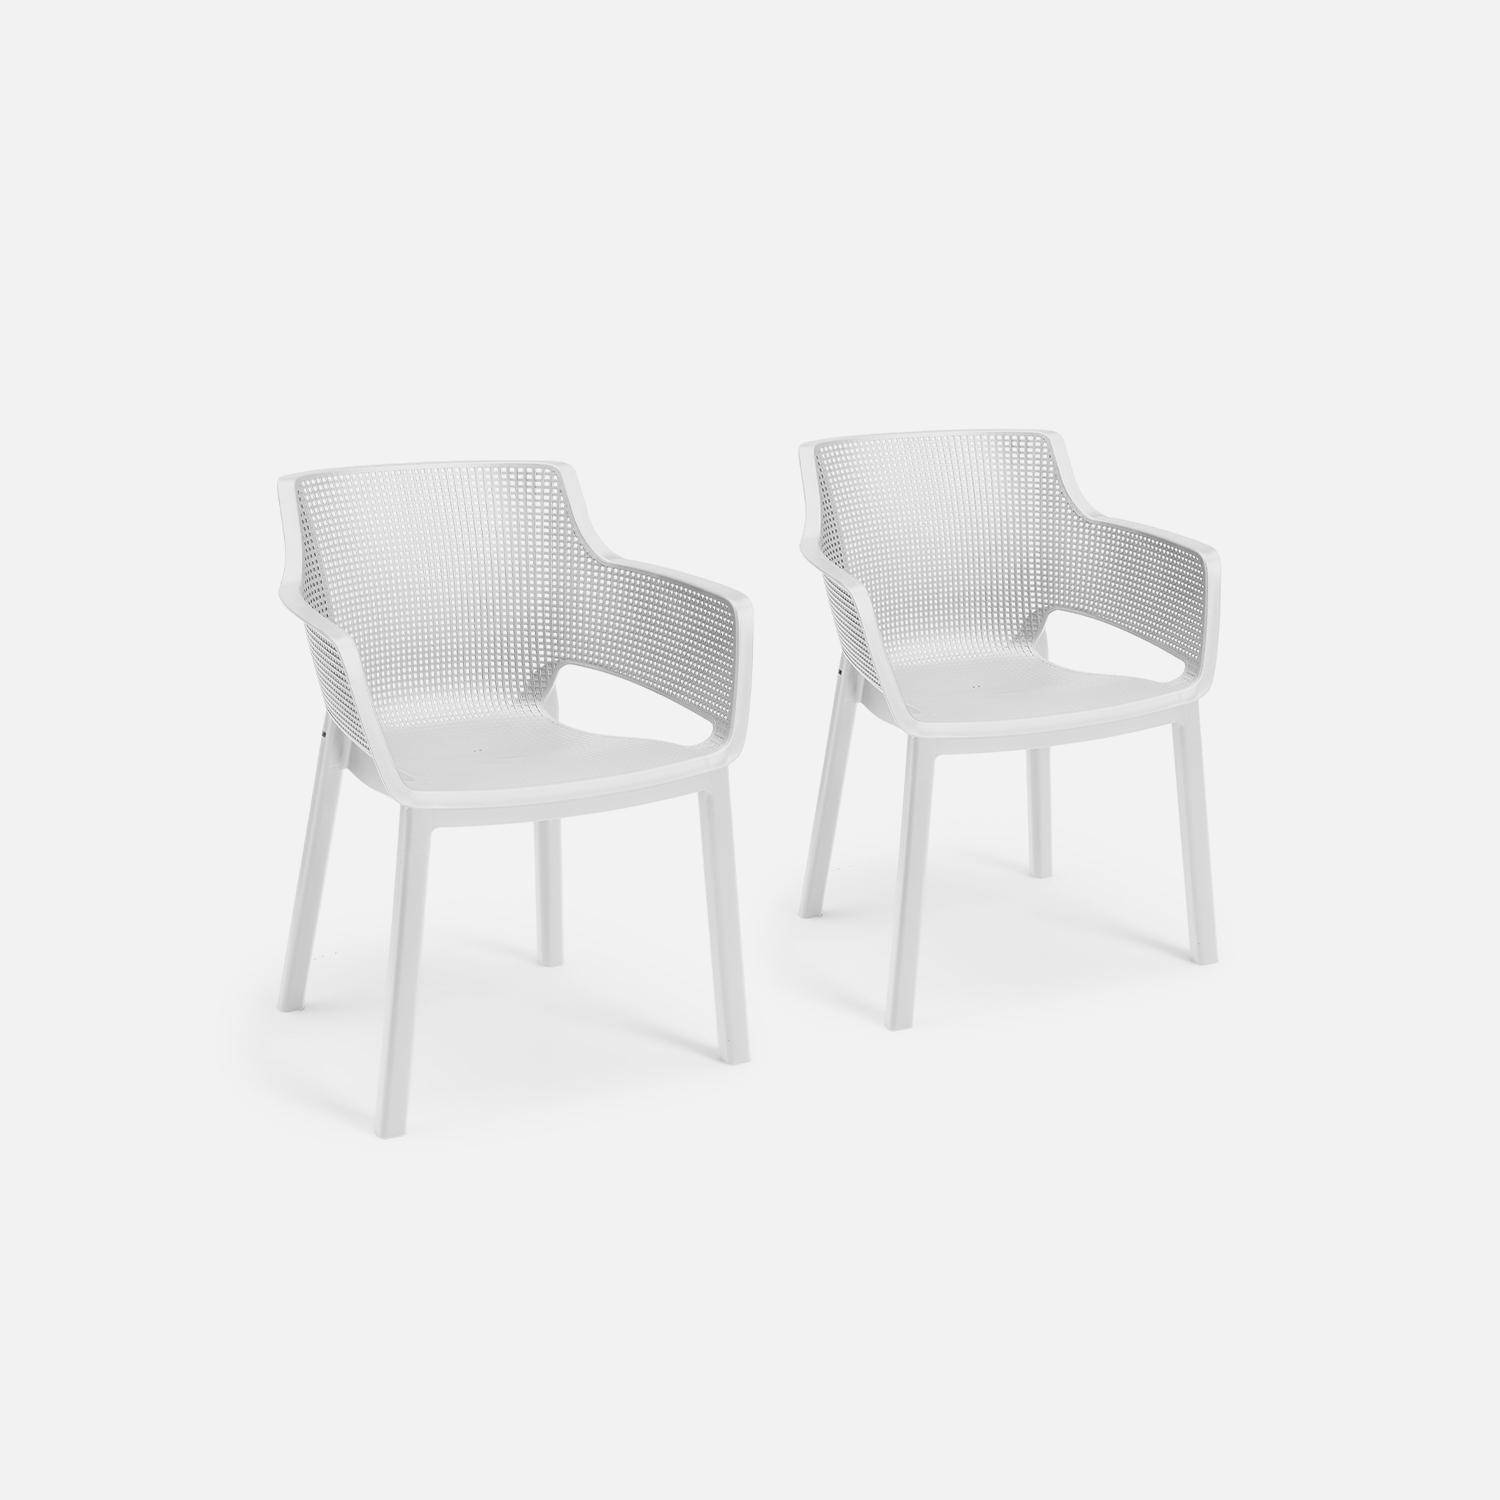 2 Gartenstühle aus gespritztem Kunststoffharz - Elisa - weiß, stapelbar Photo1